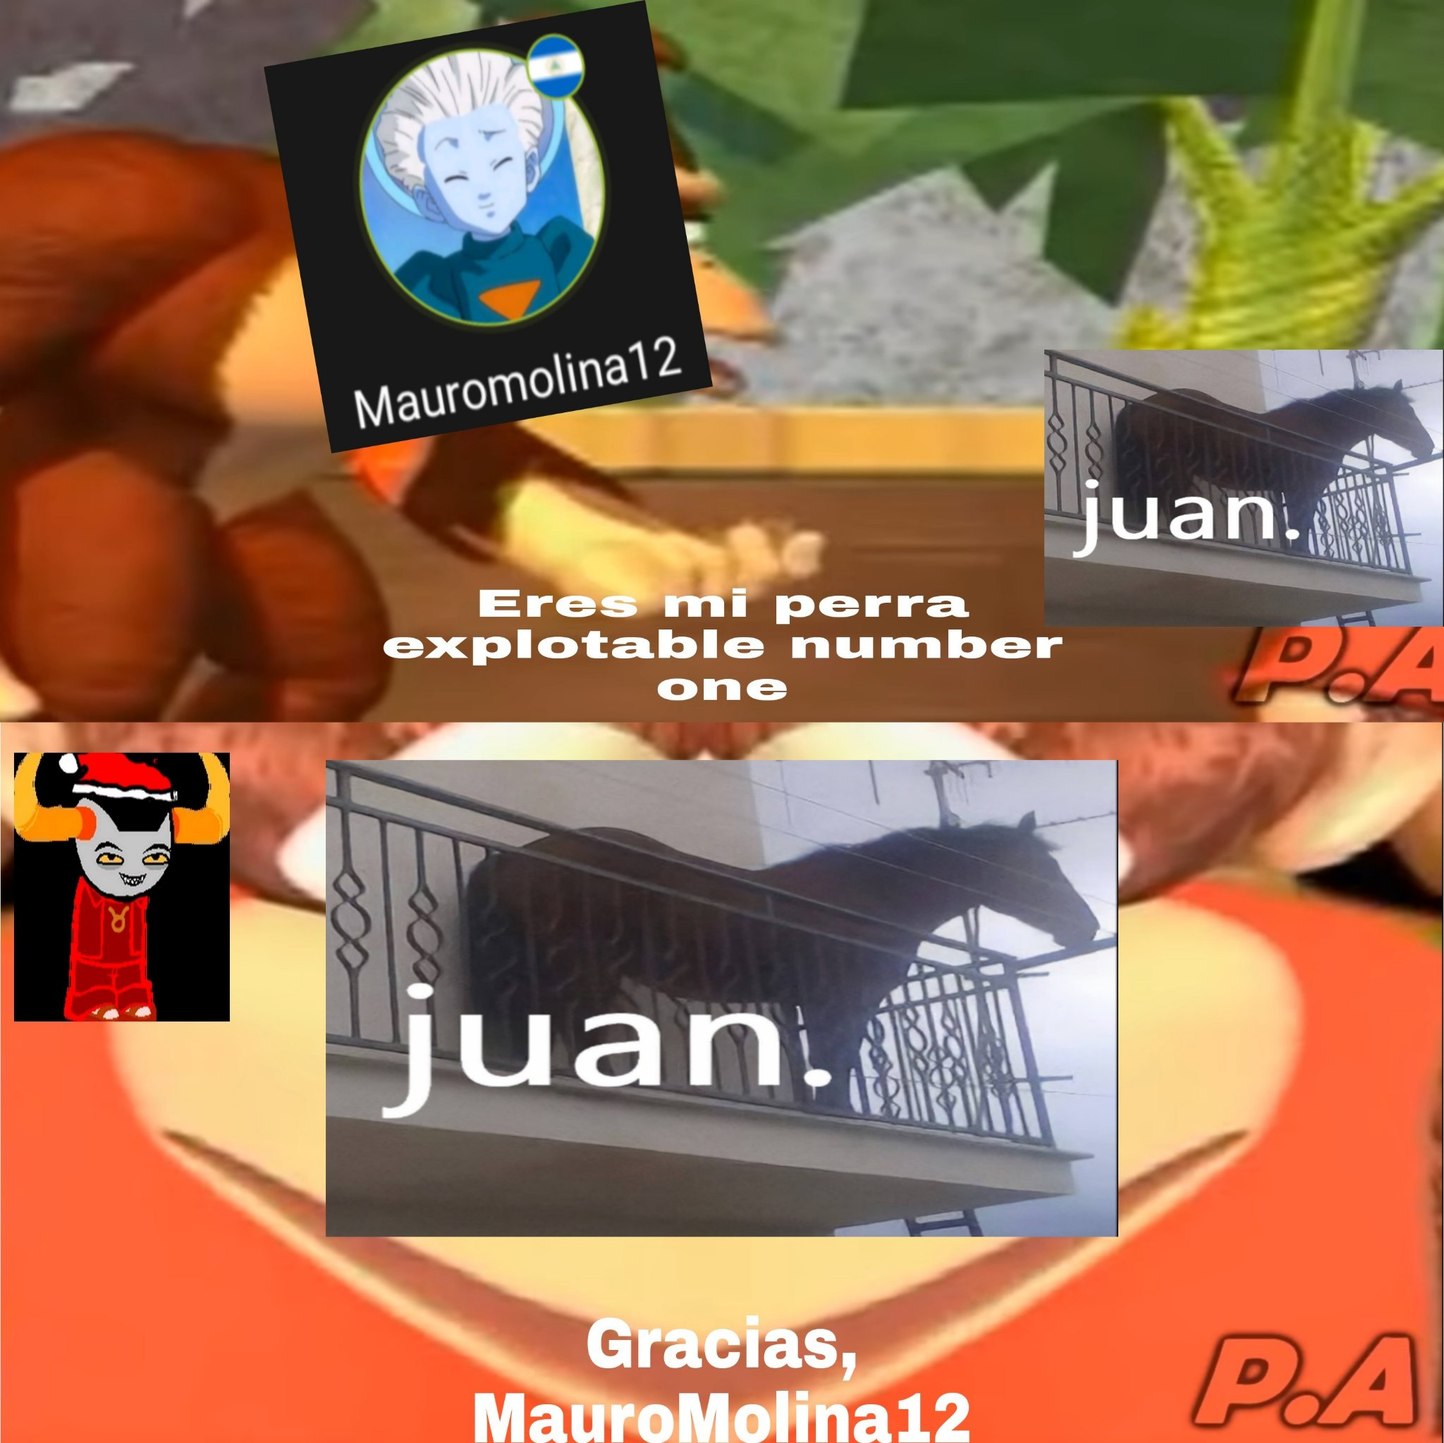 Contexto: MauroMolina12 sobreexplota mucho el meme de Juan